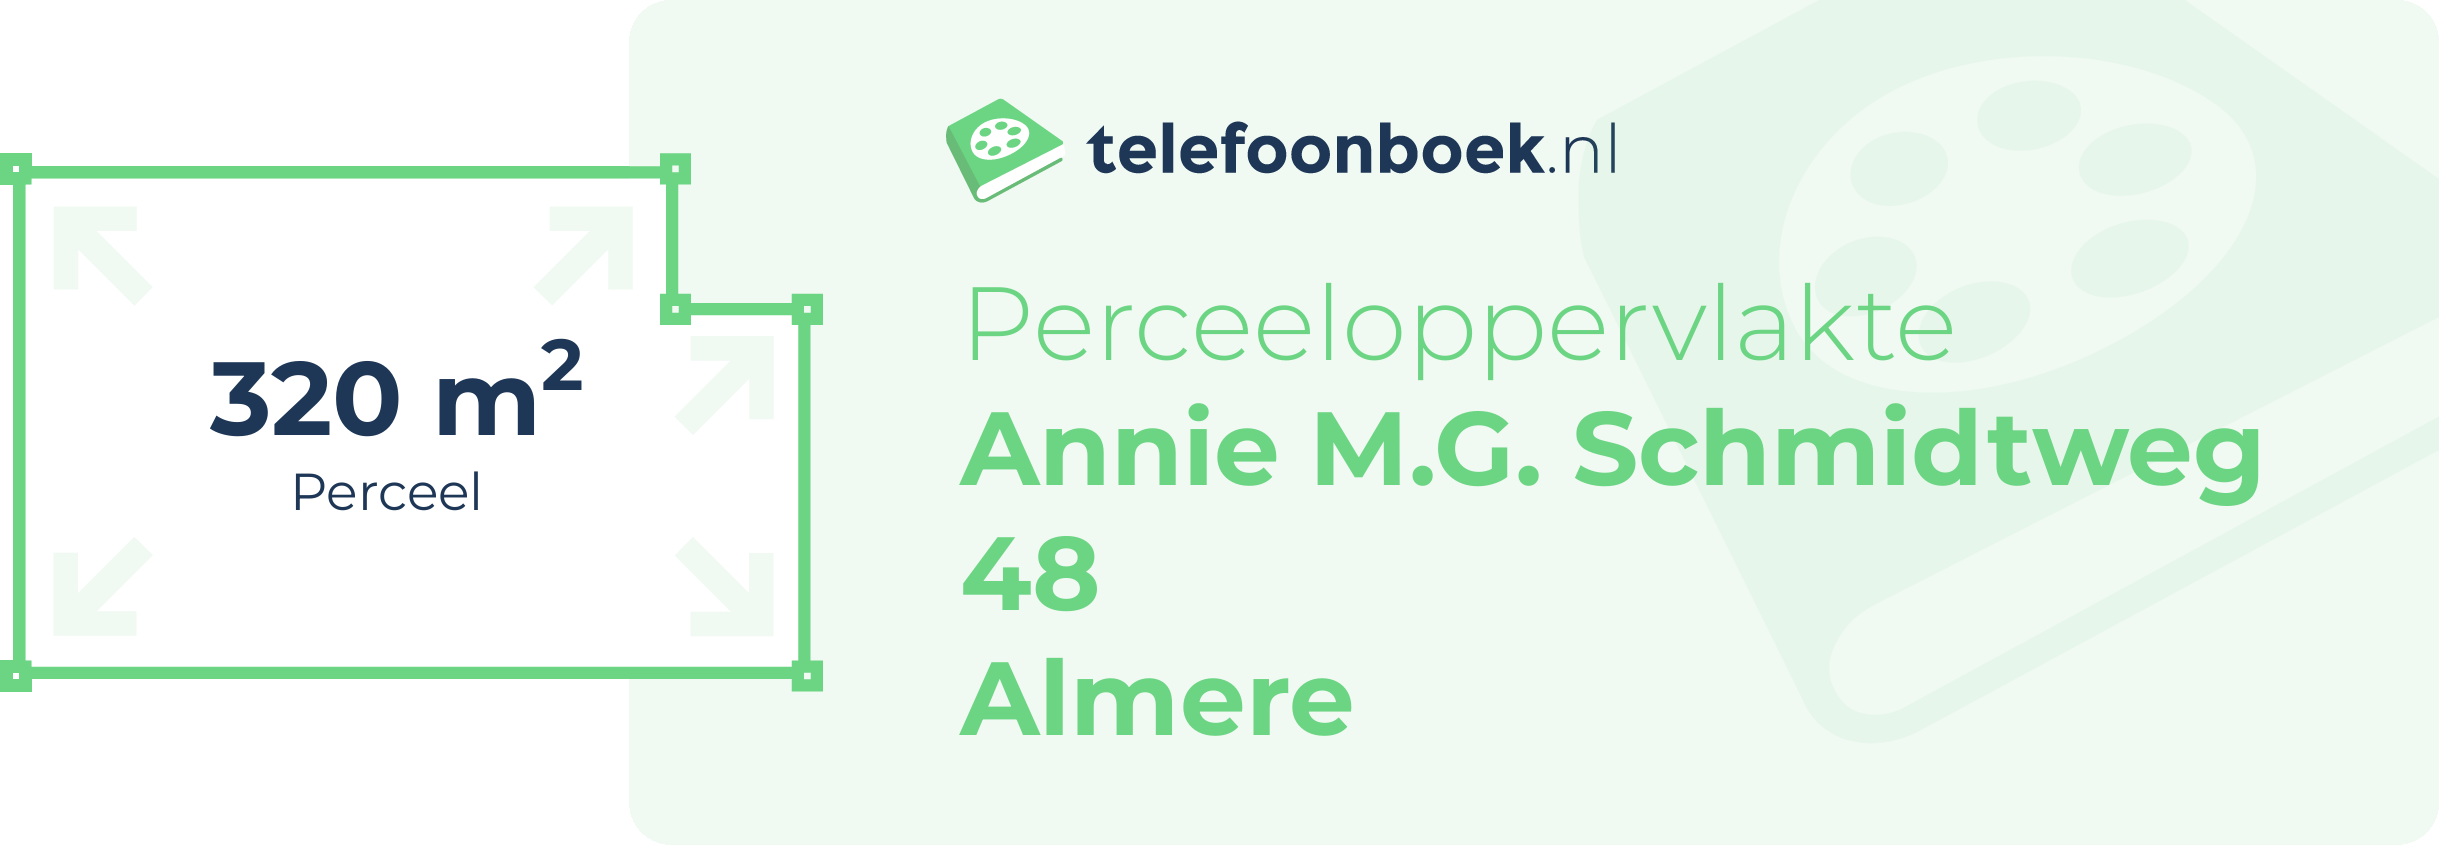 Perceeloppervlakte Annie M.G. Schmidtweg 48 Almere